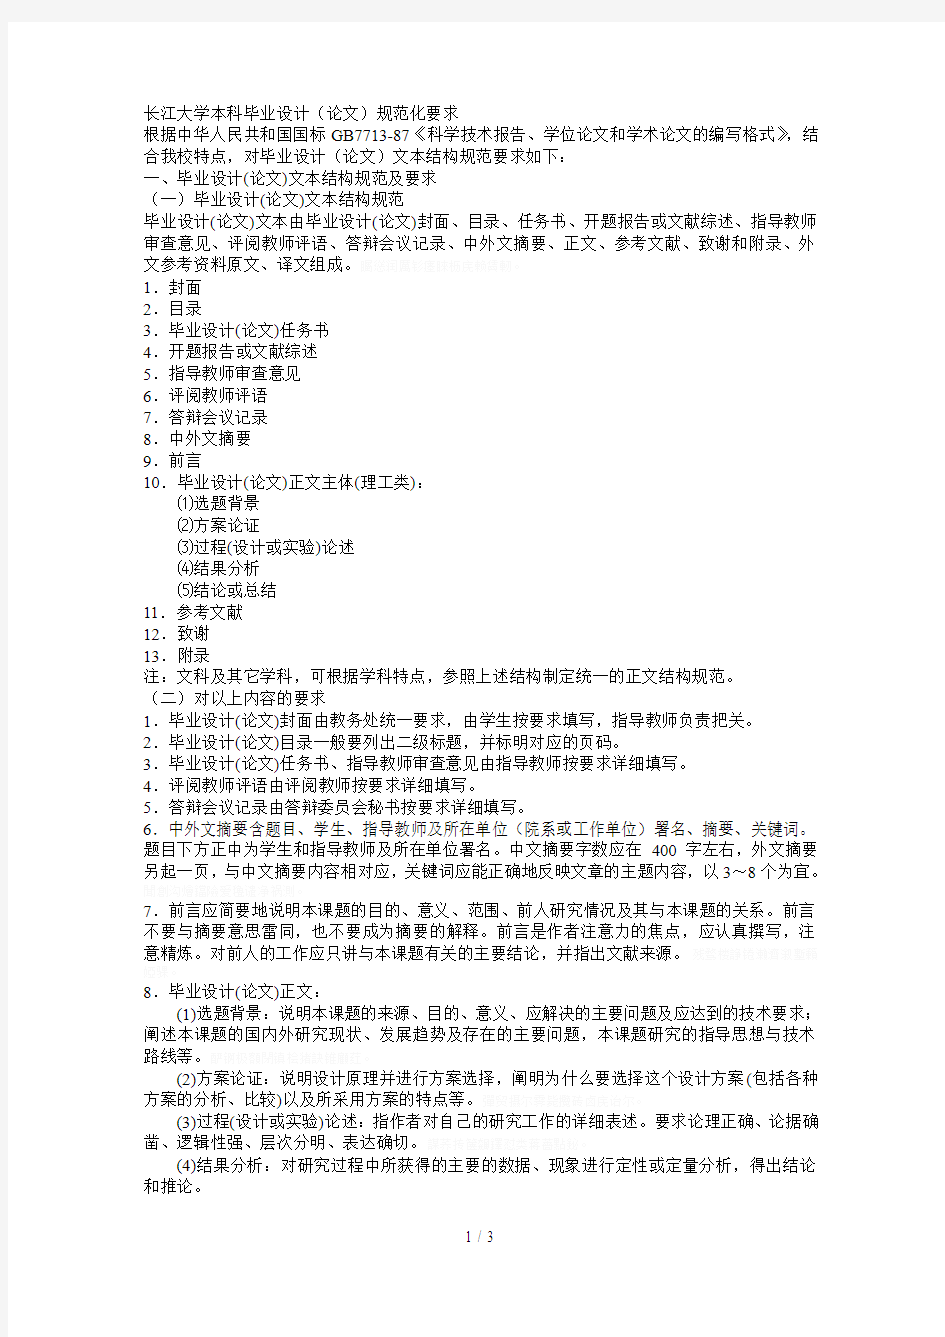 长江大学本科毕业设计(论文)规范化要求